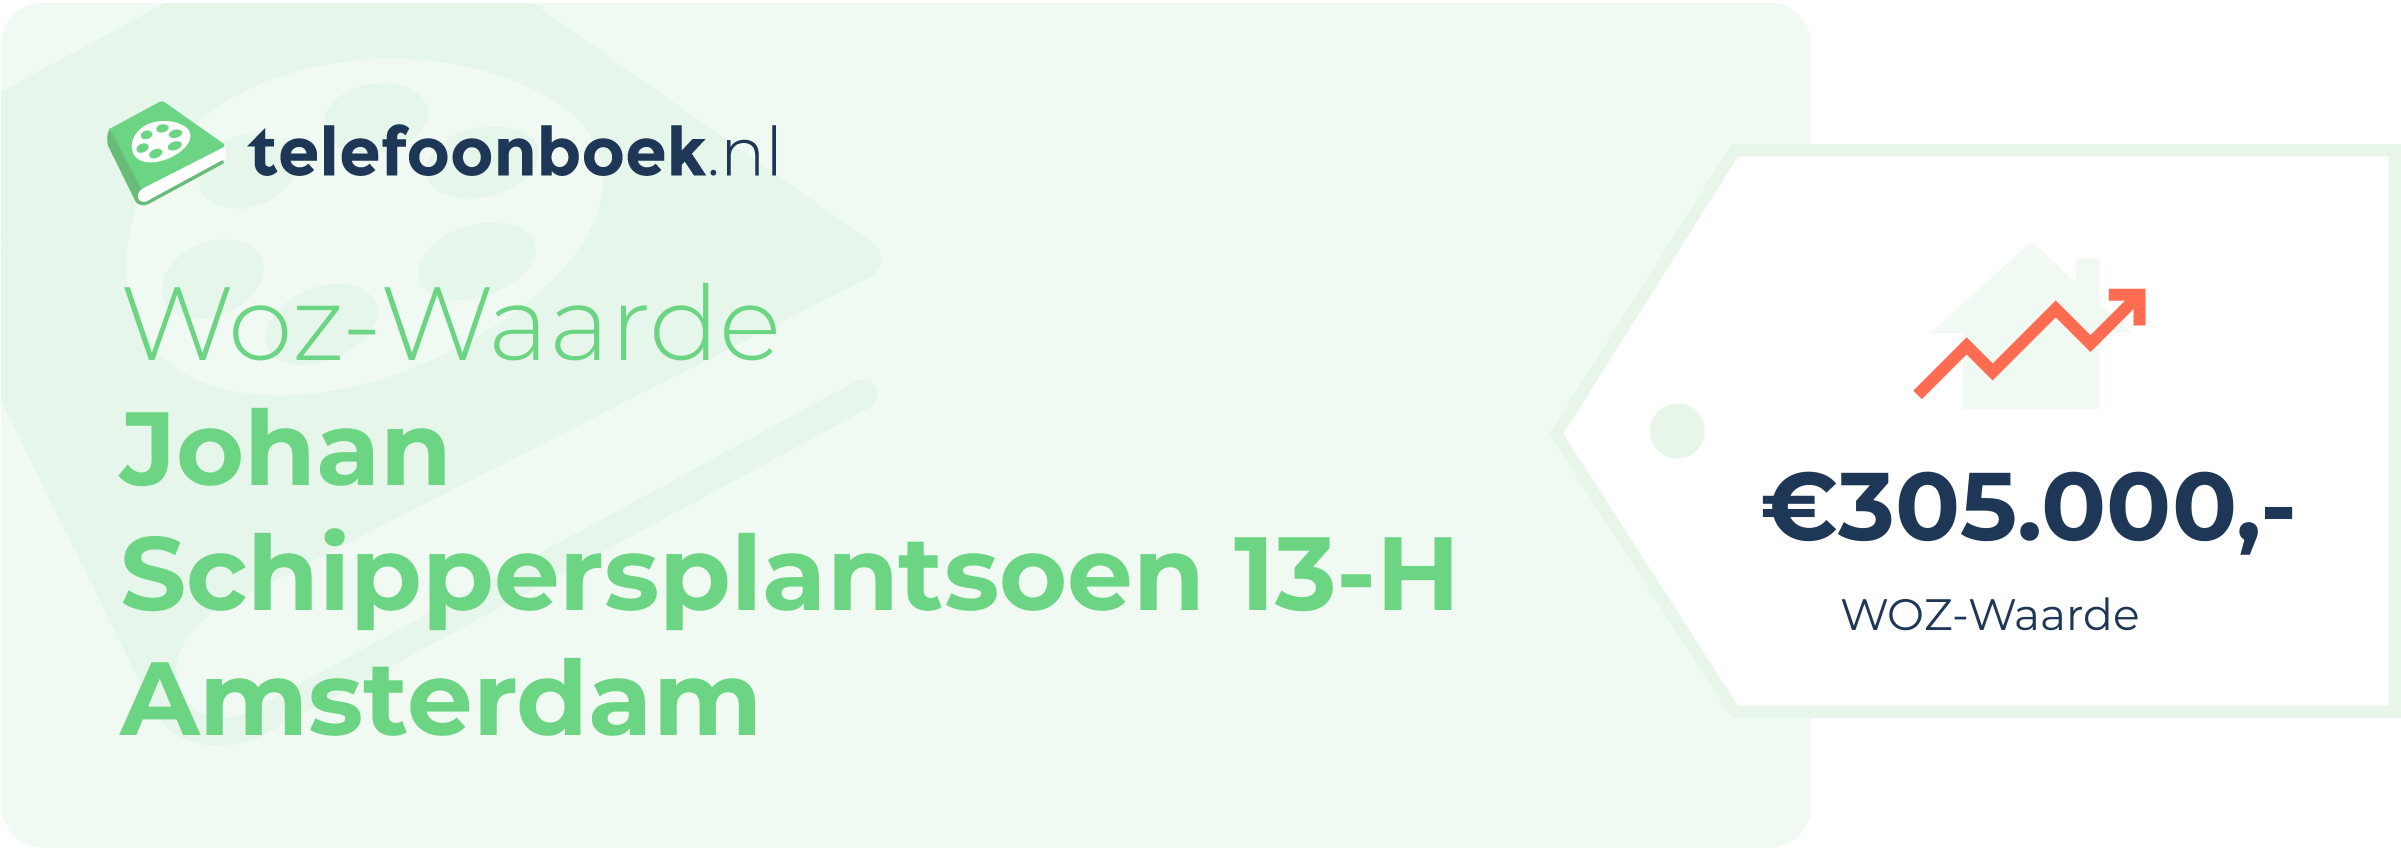 WOZ-waarde Johan Schippersplantsoen 13-H Amsterdam